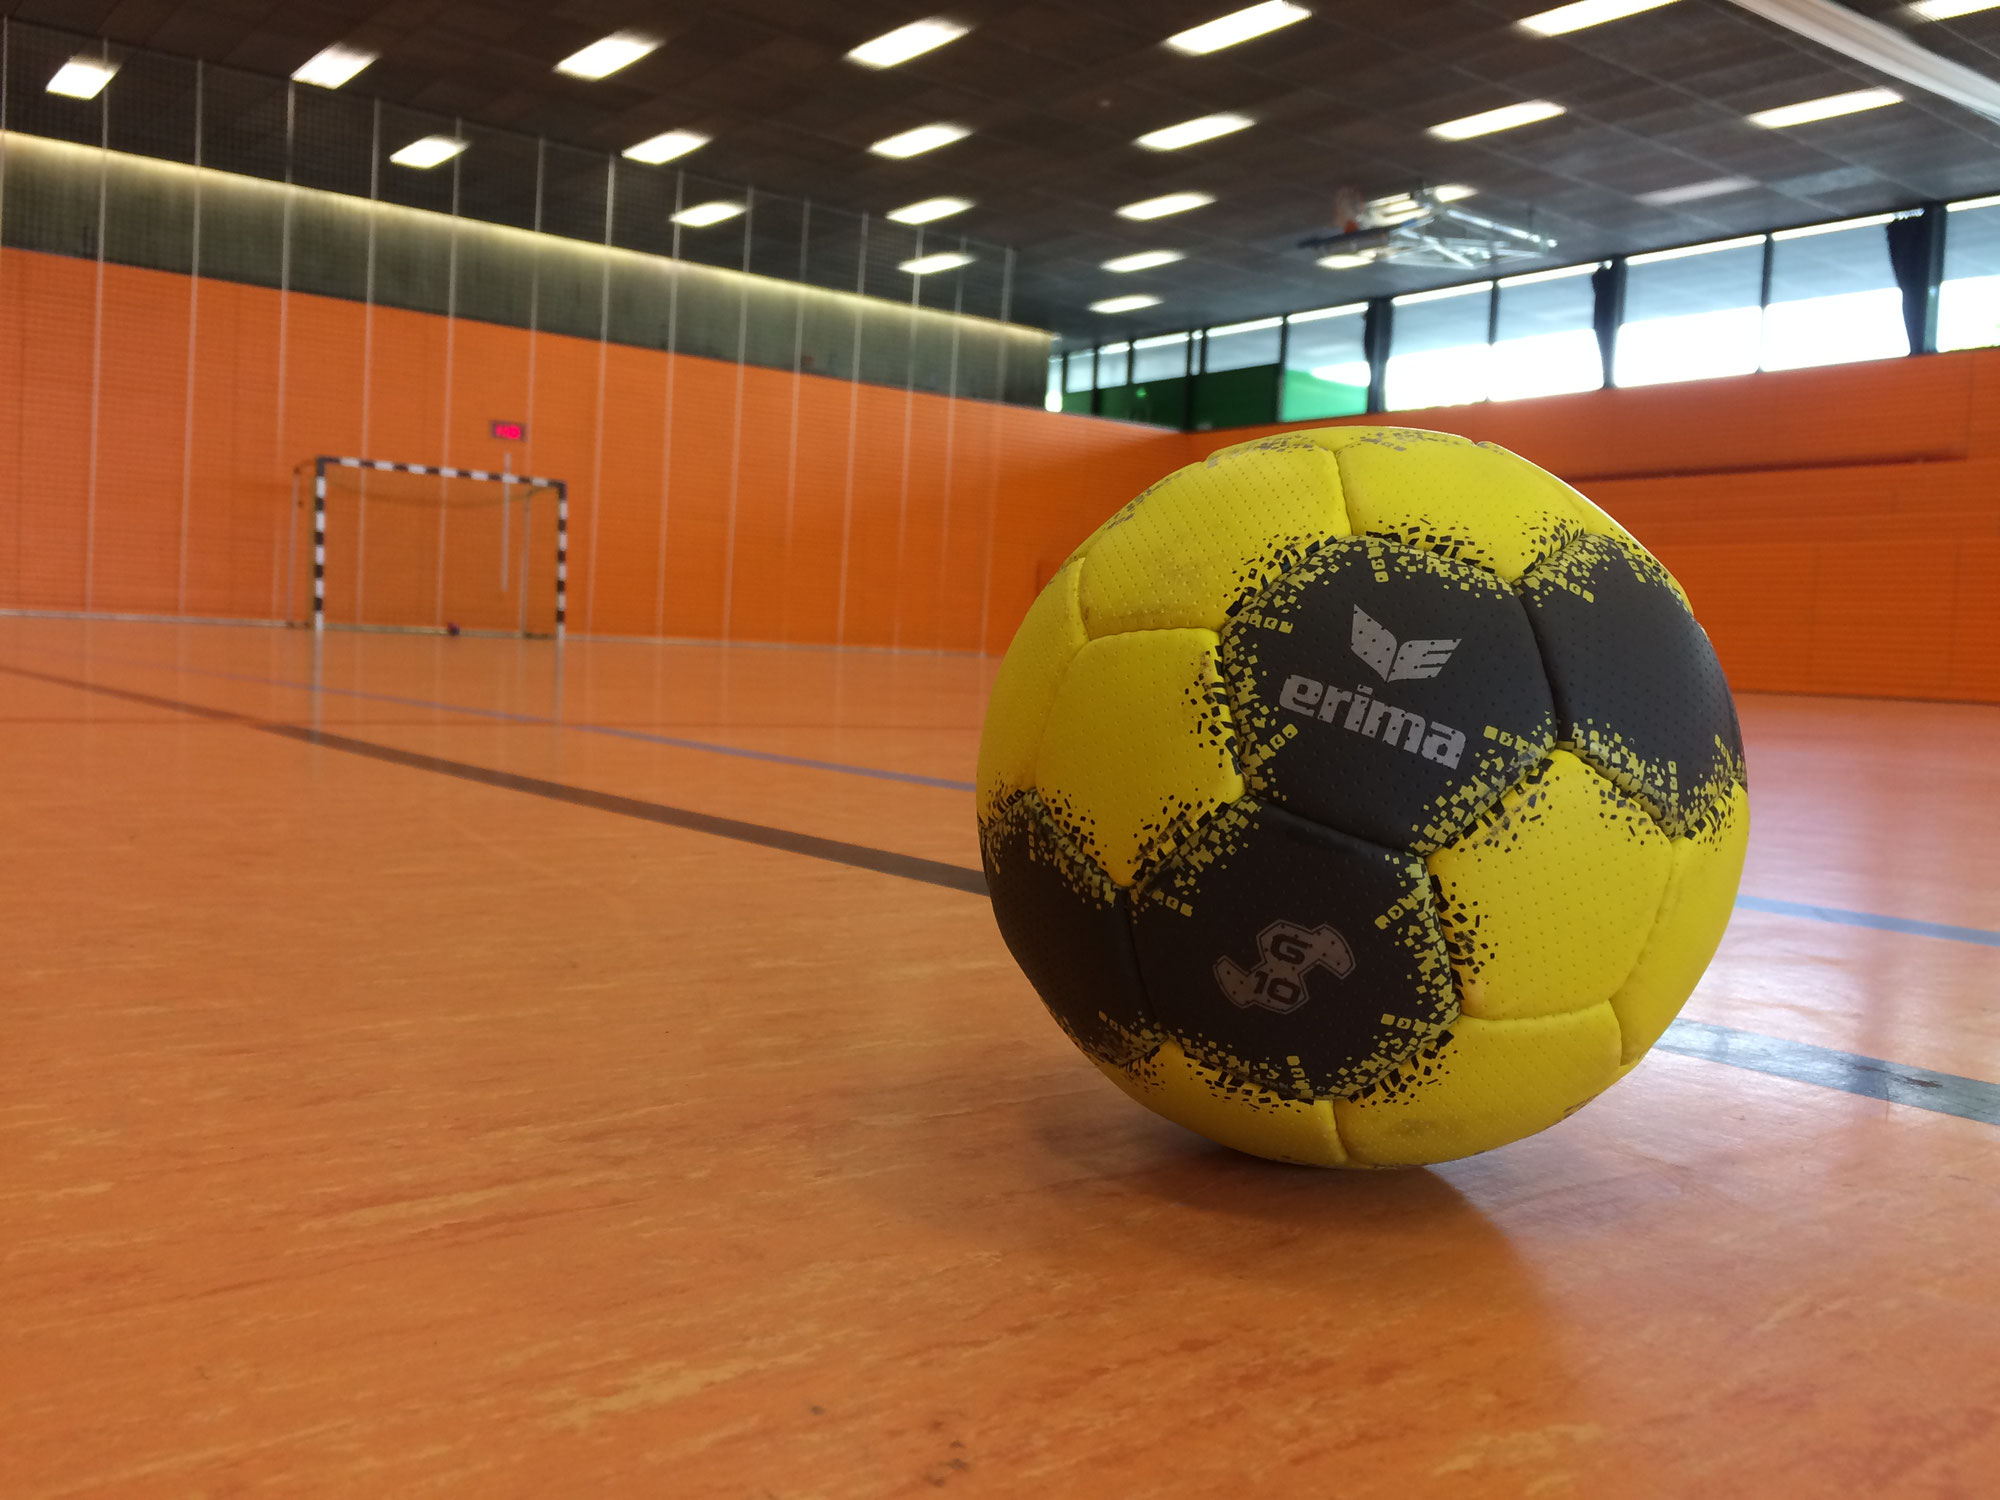 (c) Handball-garching.de